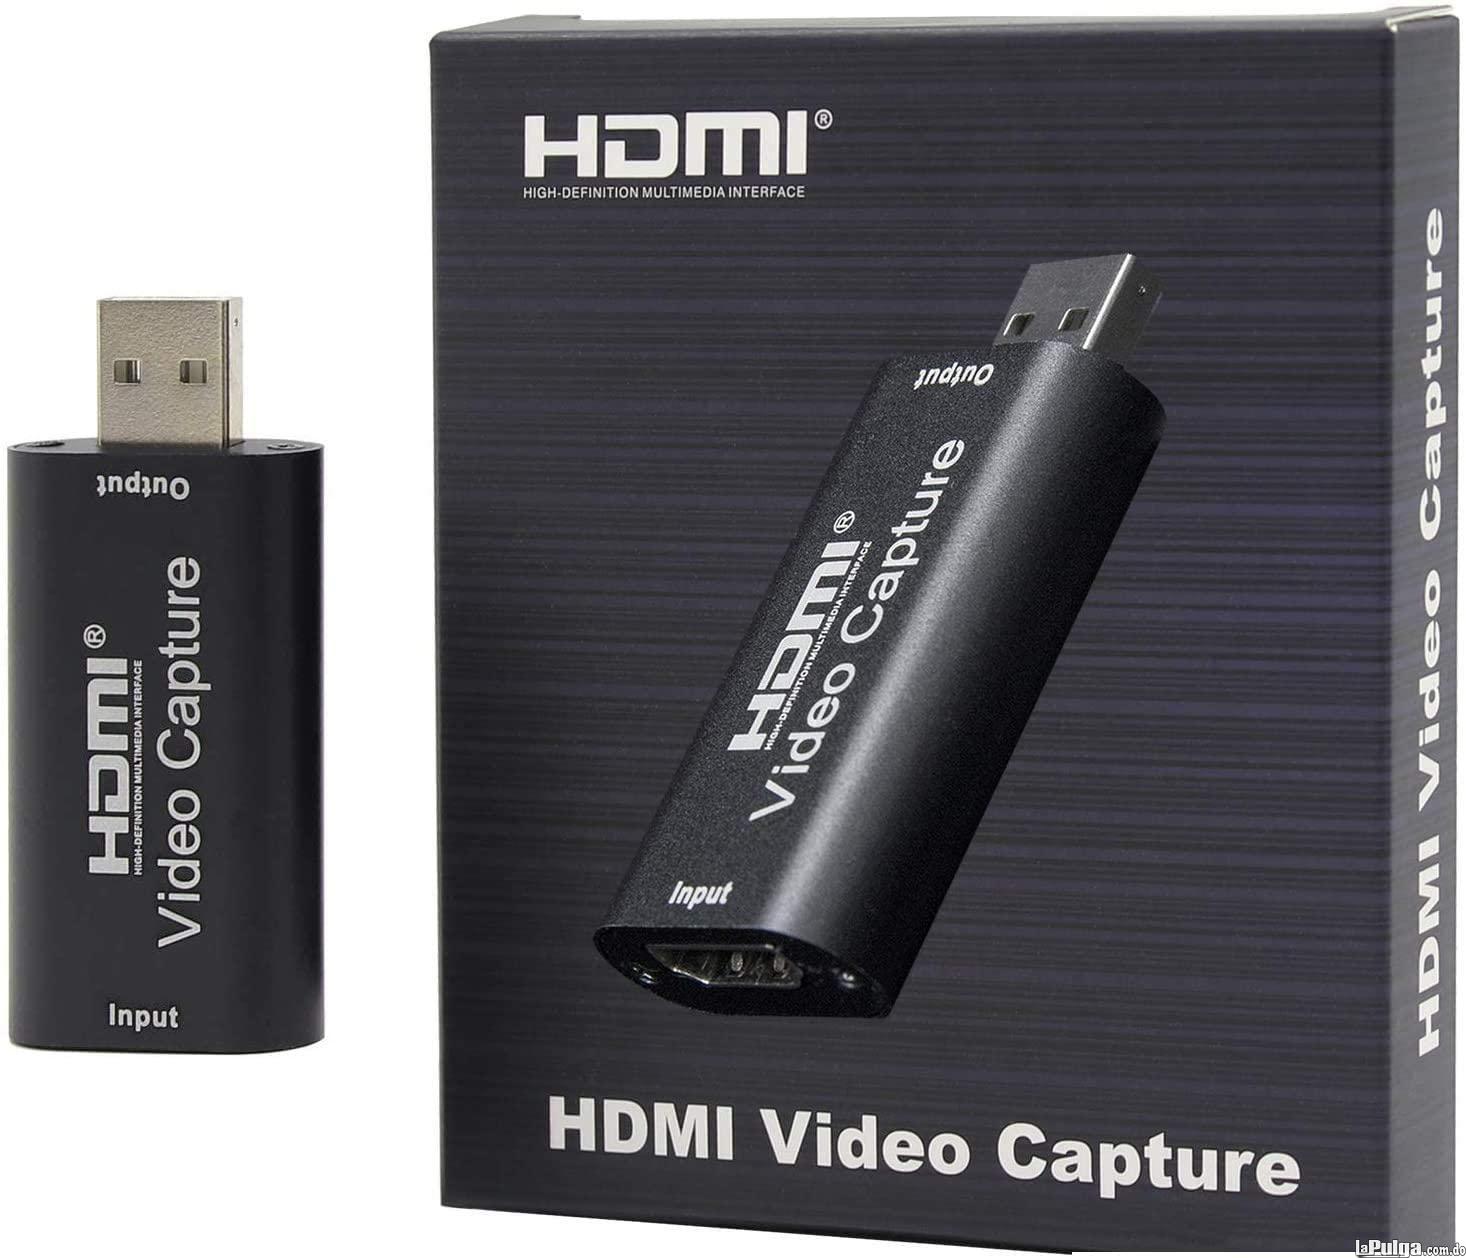 Captura de Video USB 2.0 HDMI Foto 7113302-3.jpg